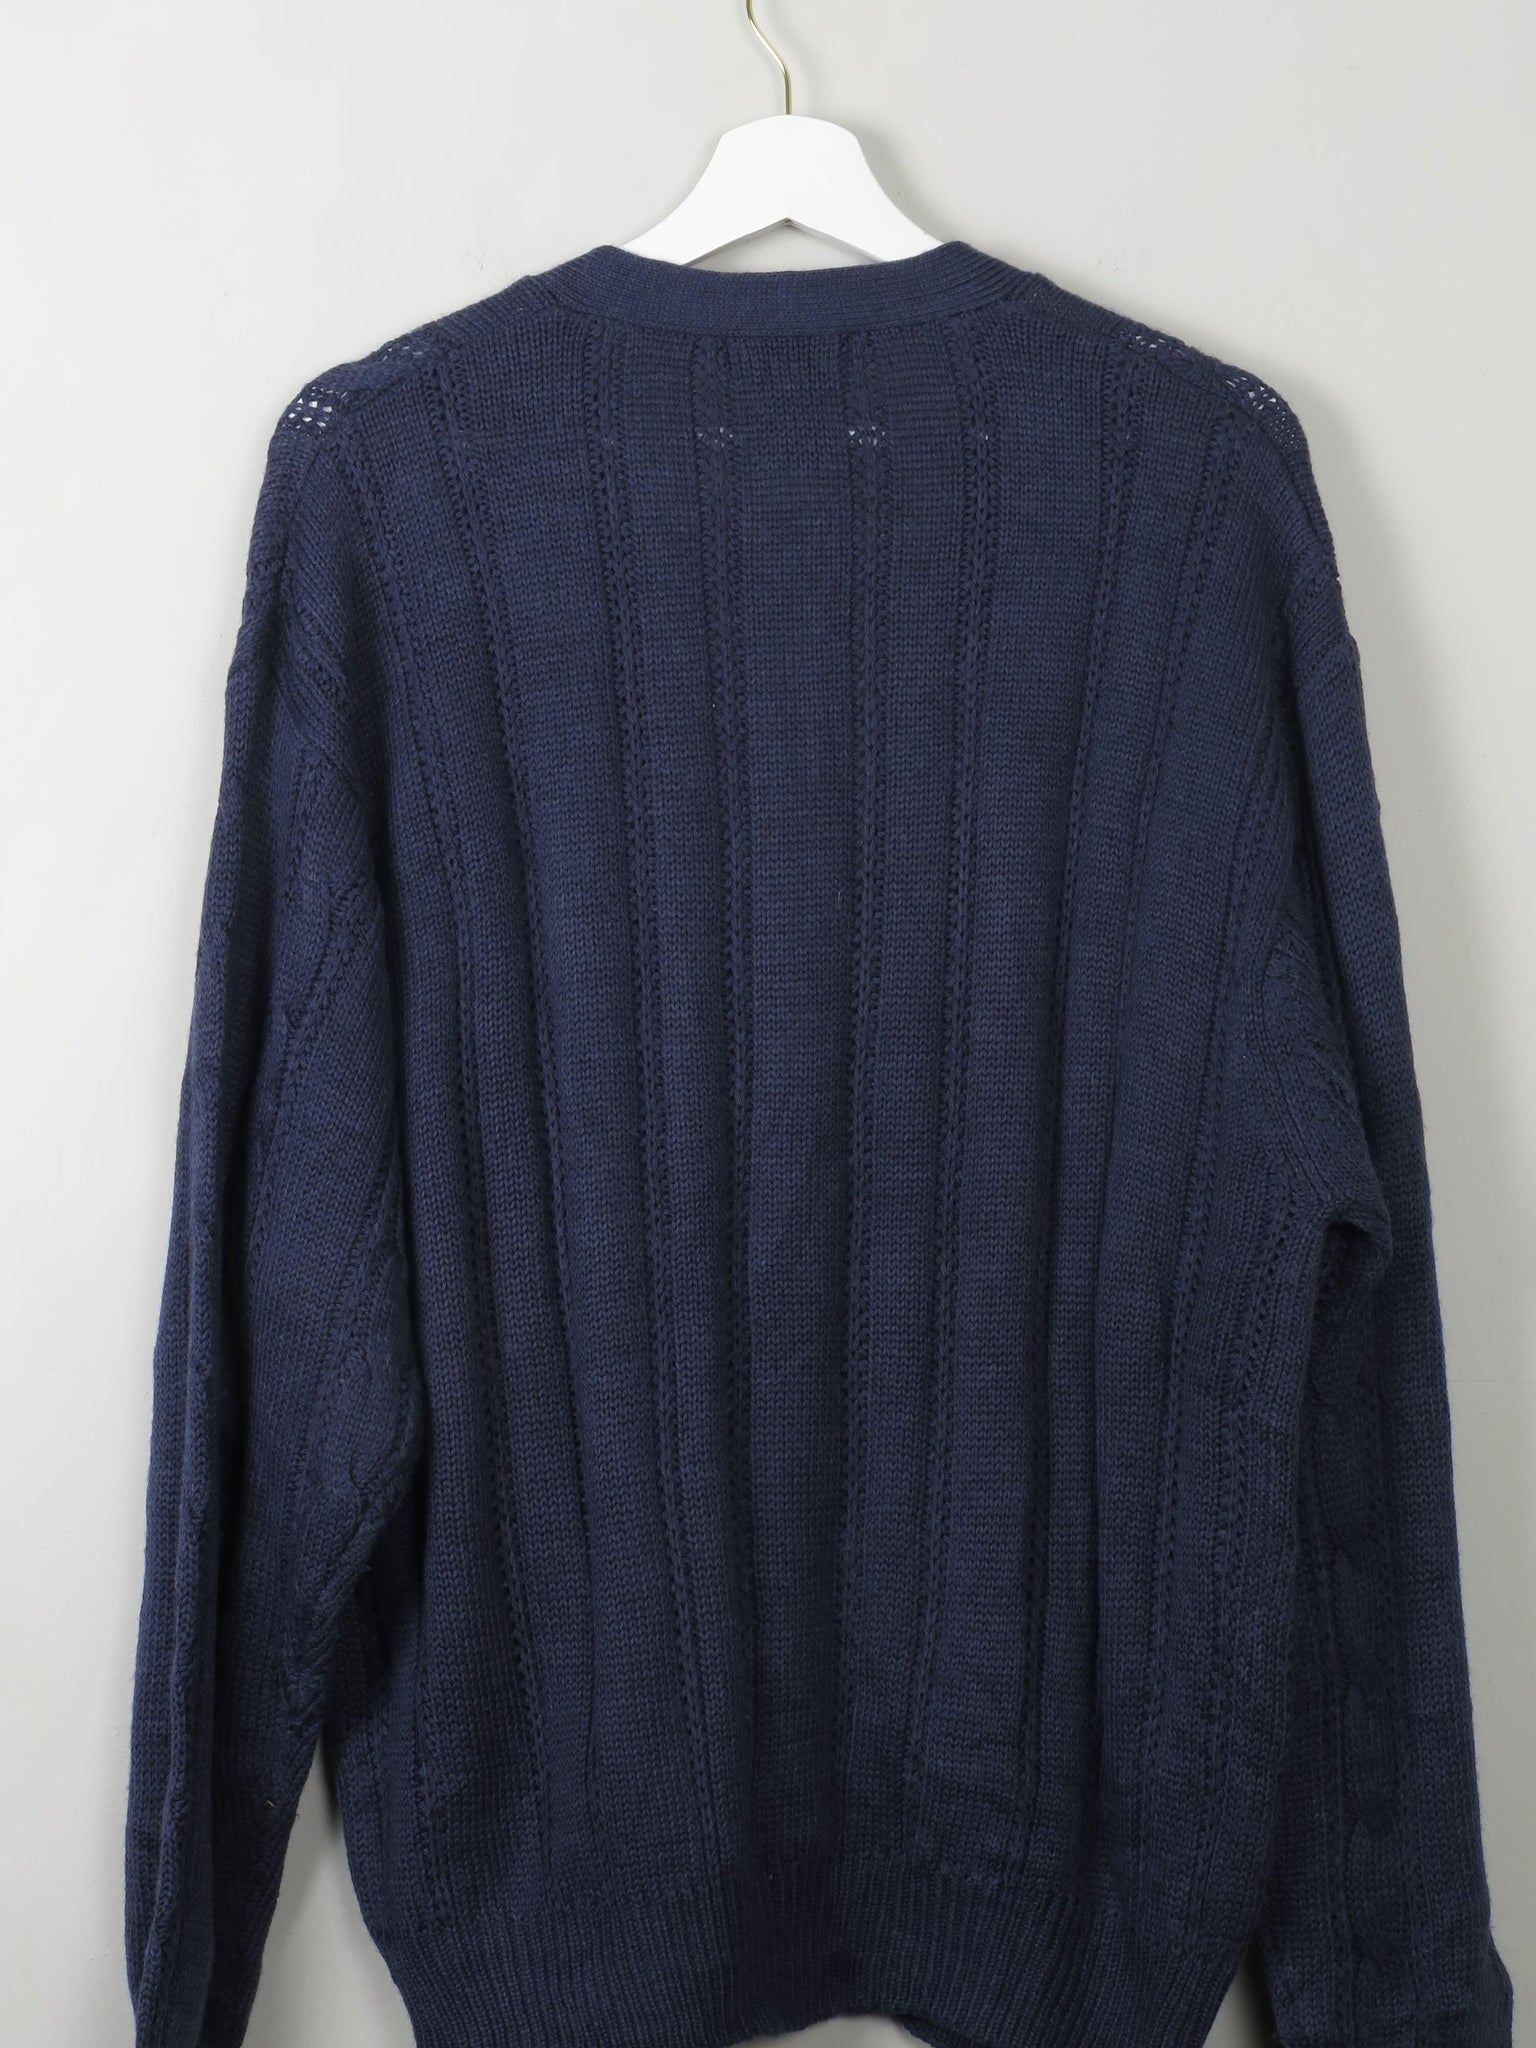 Men's Vintage Knitted Cardigan Blue L - The Harlequin